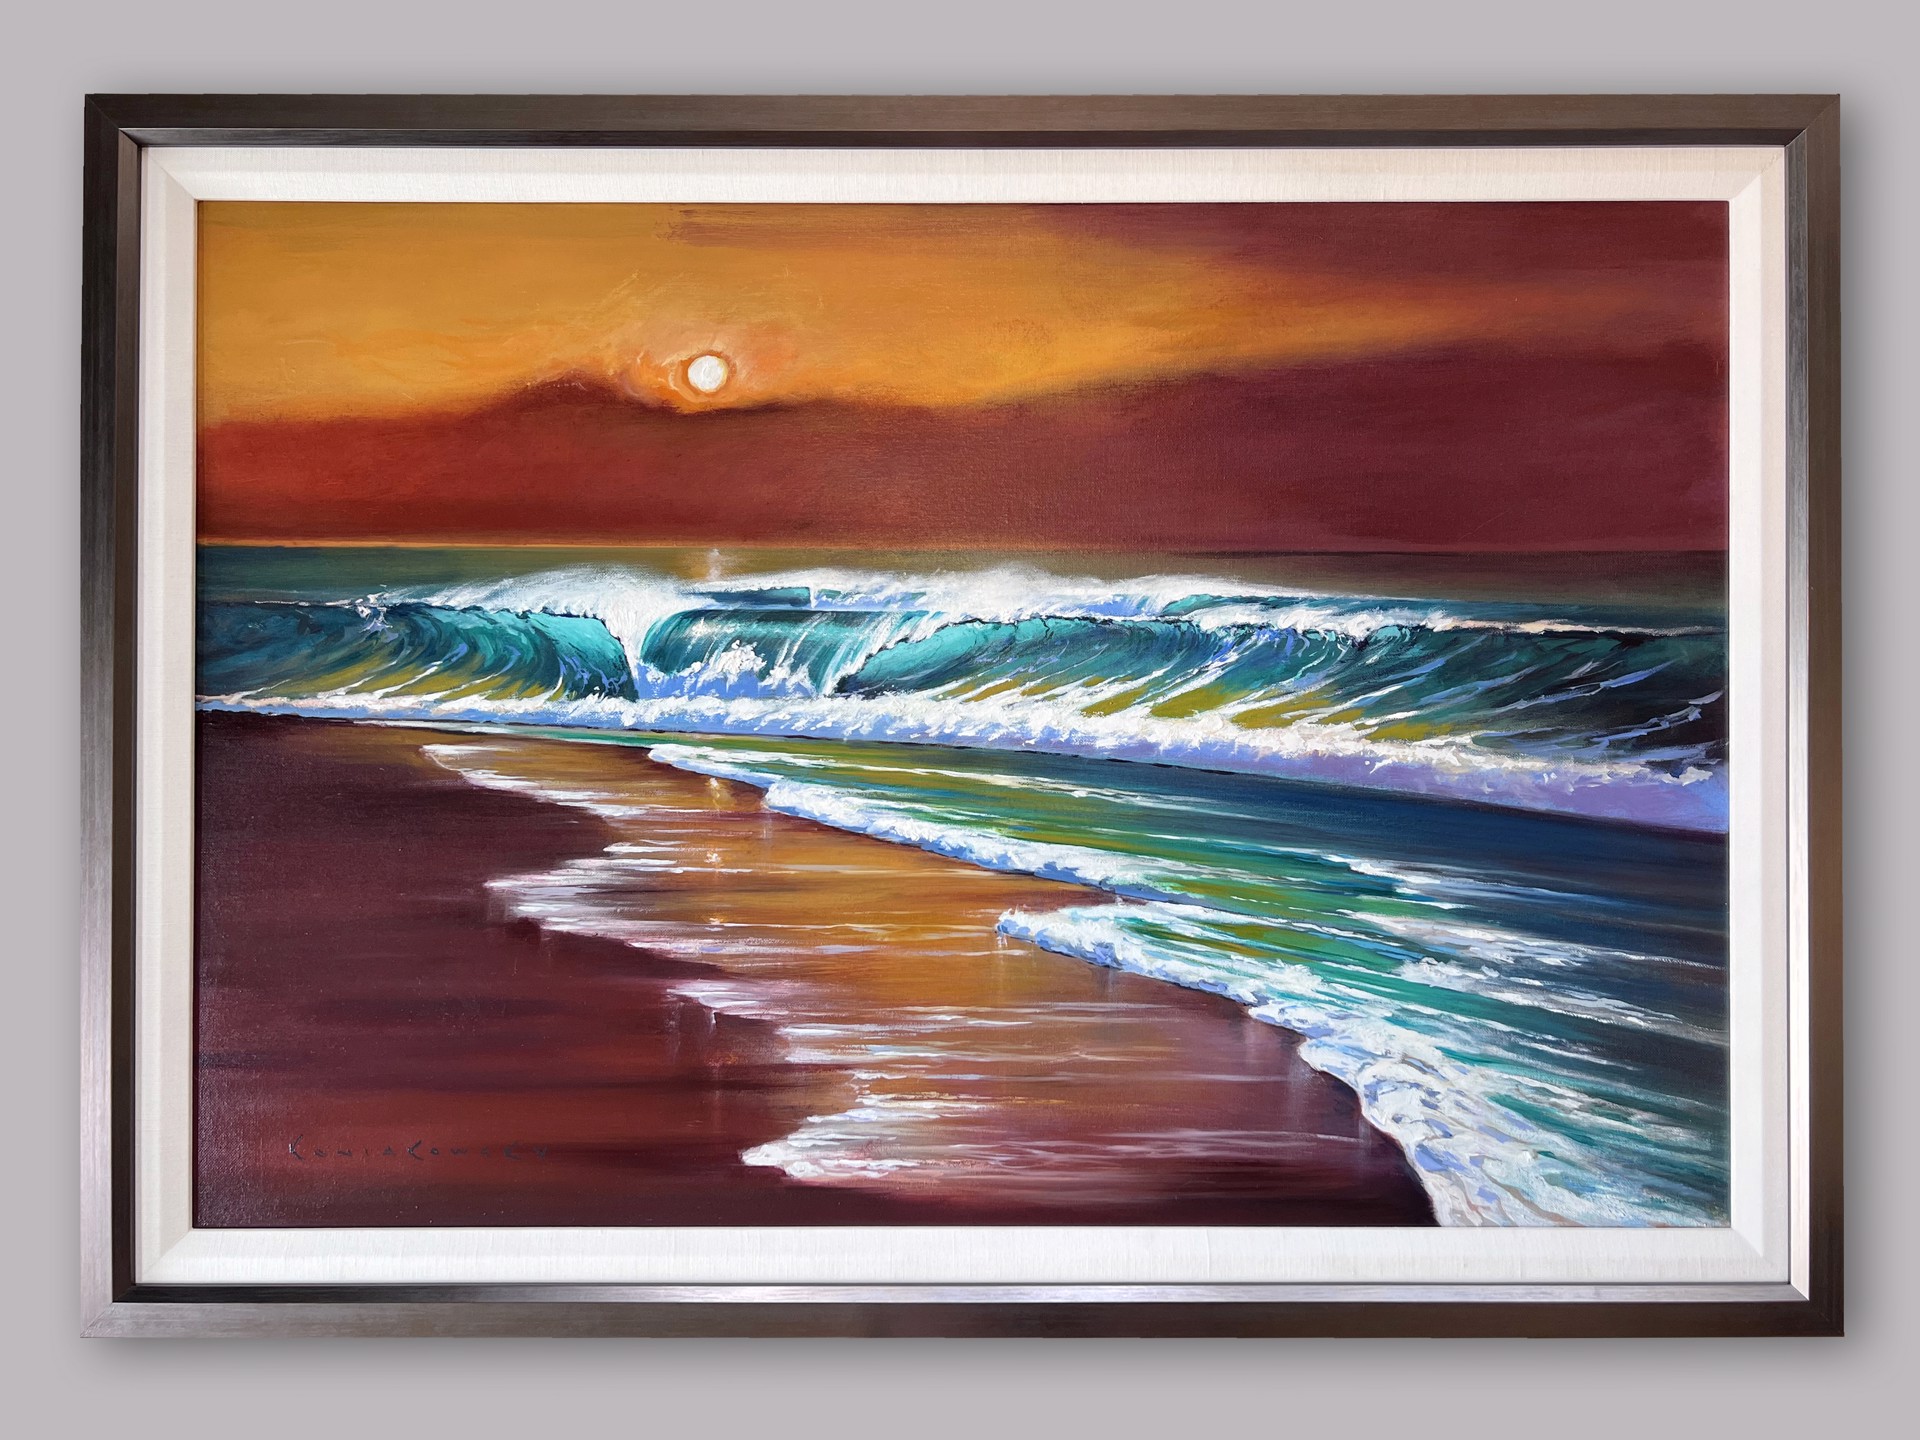 The Blushing Sea by Wade Koniakowsky